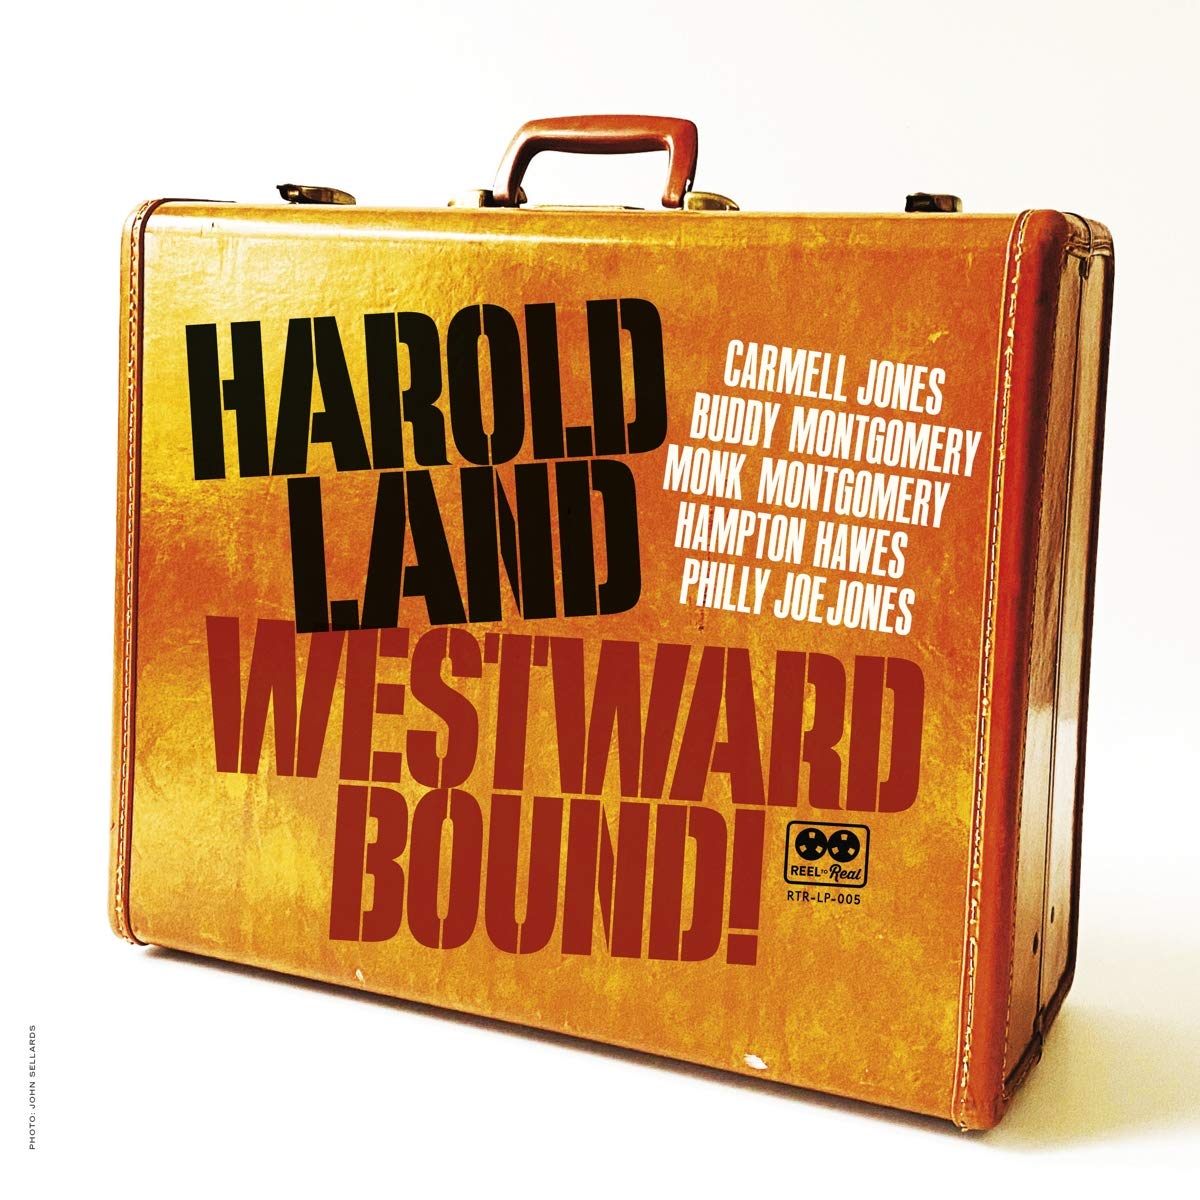 Harold Land Westward Bound!